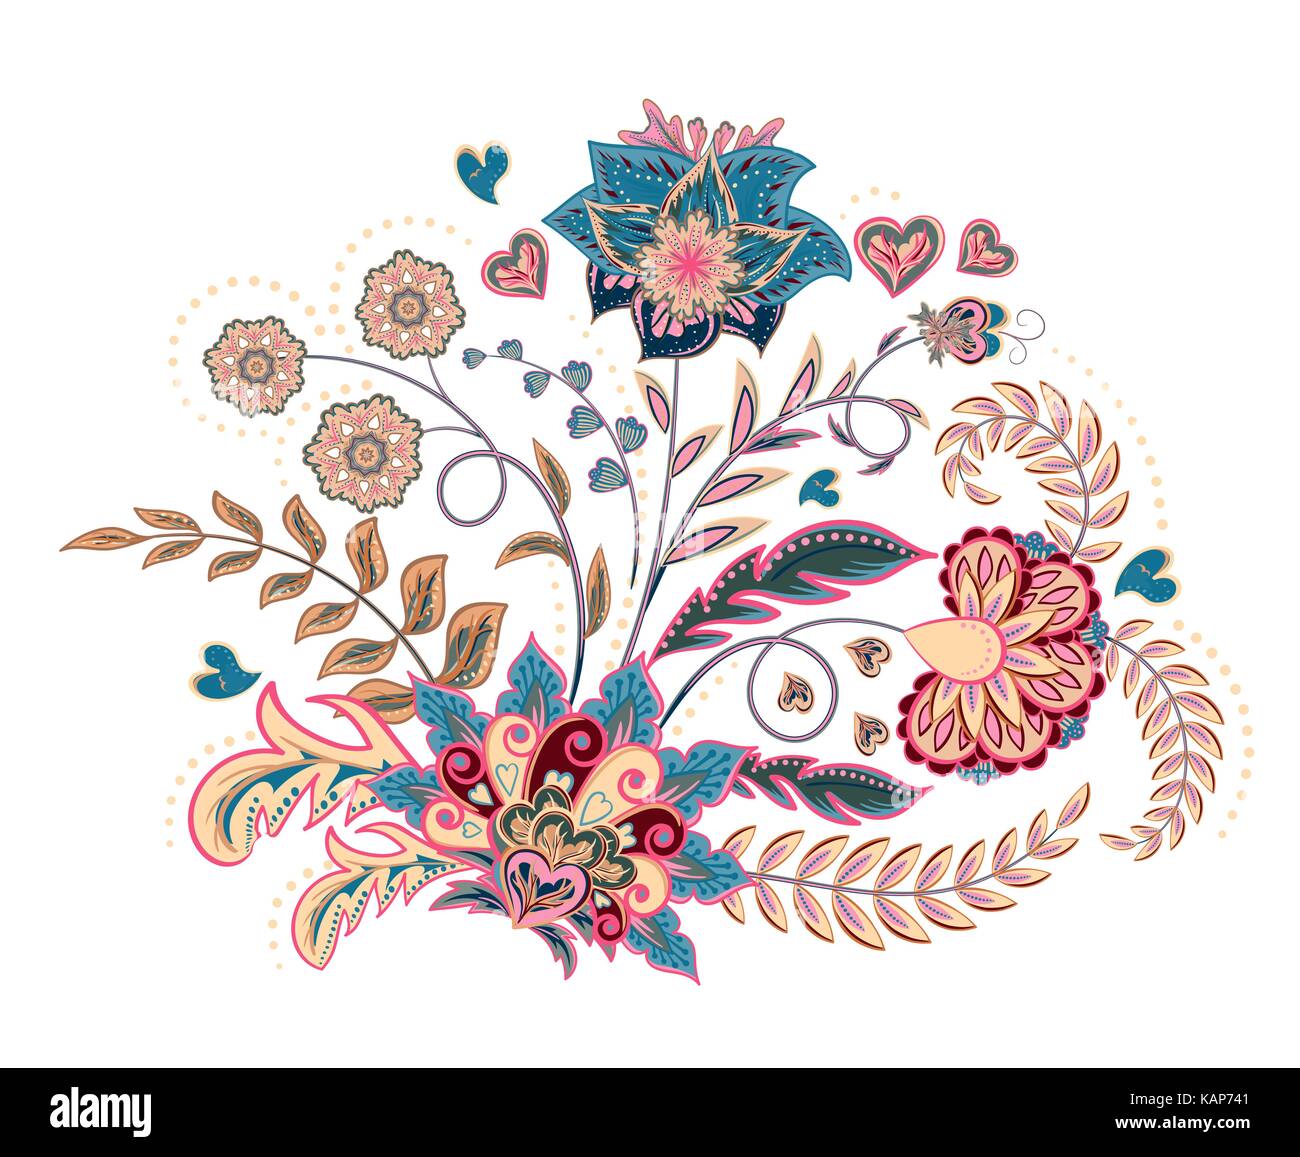 Les points de broderie avec fantaisie fleurs dans des tons pastels. vecteur ornement de mode sur fond blanc pour l'est traditionnel en tissu décoration florale. vector Illustration de Vecteur